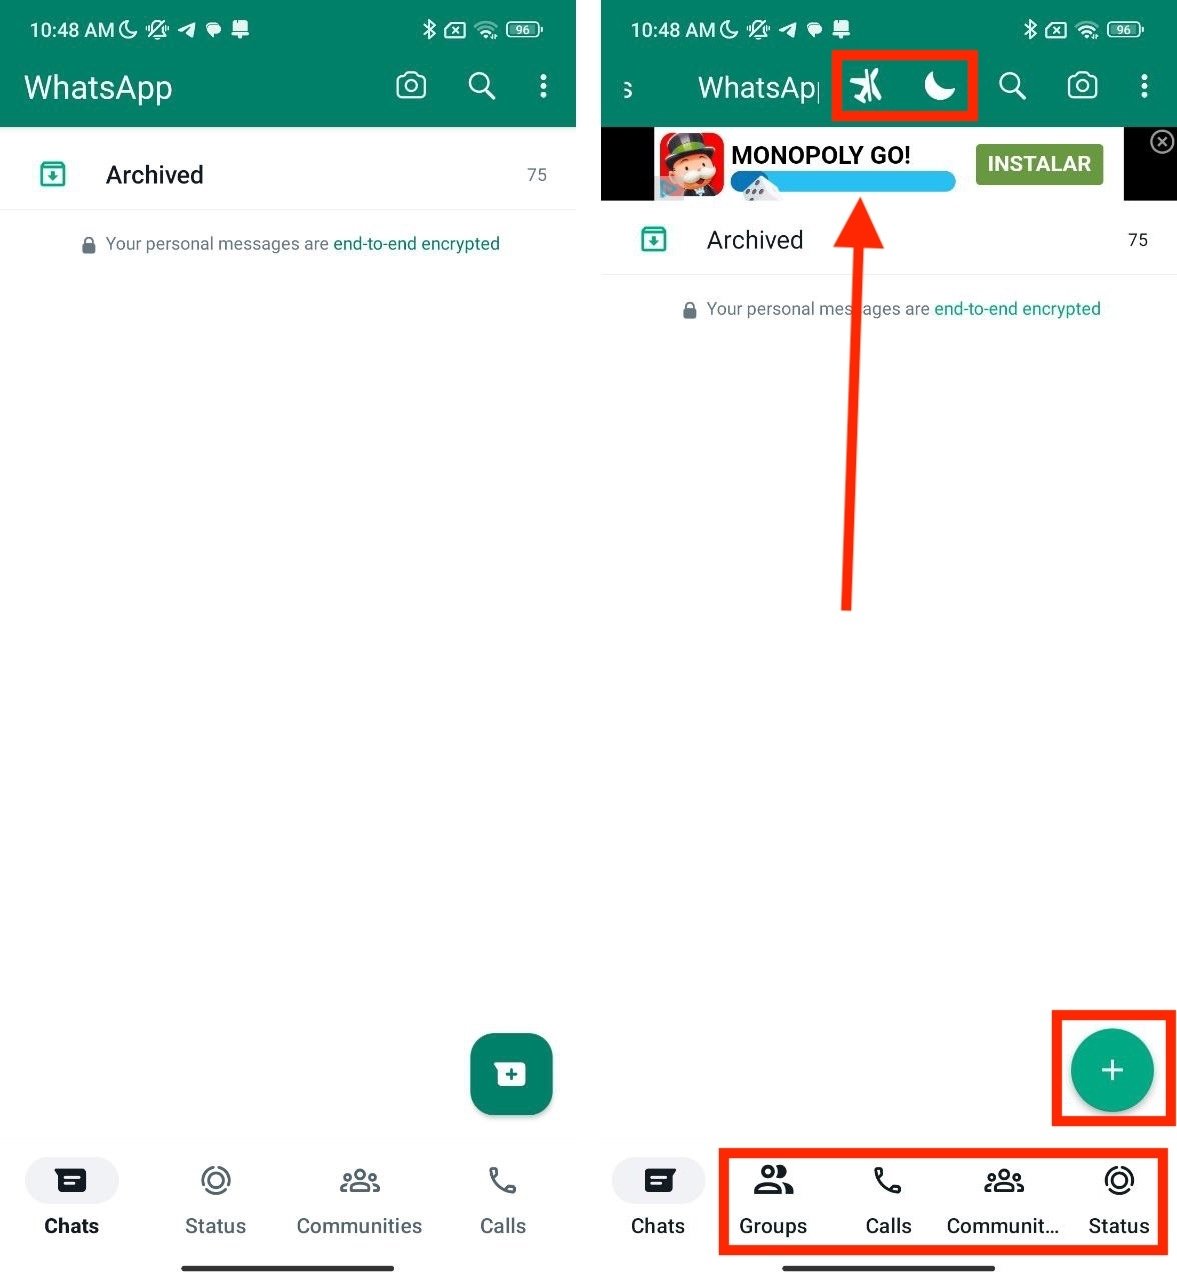 Différences dans l'écran principal entre WhatsApp et WhatsApp Plus